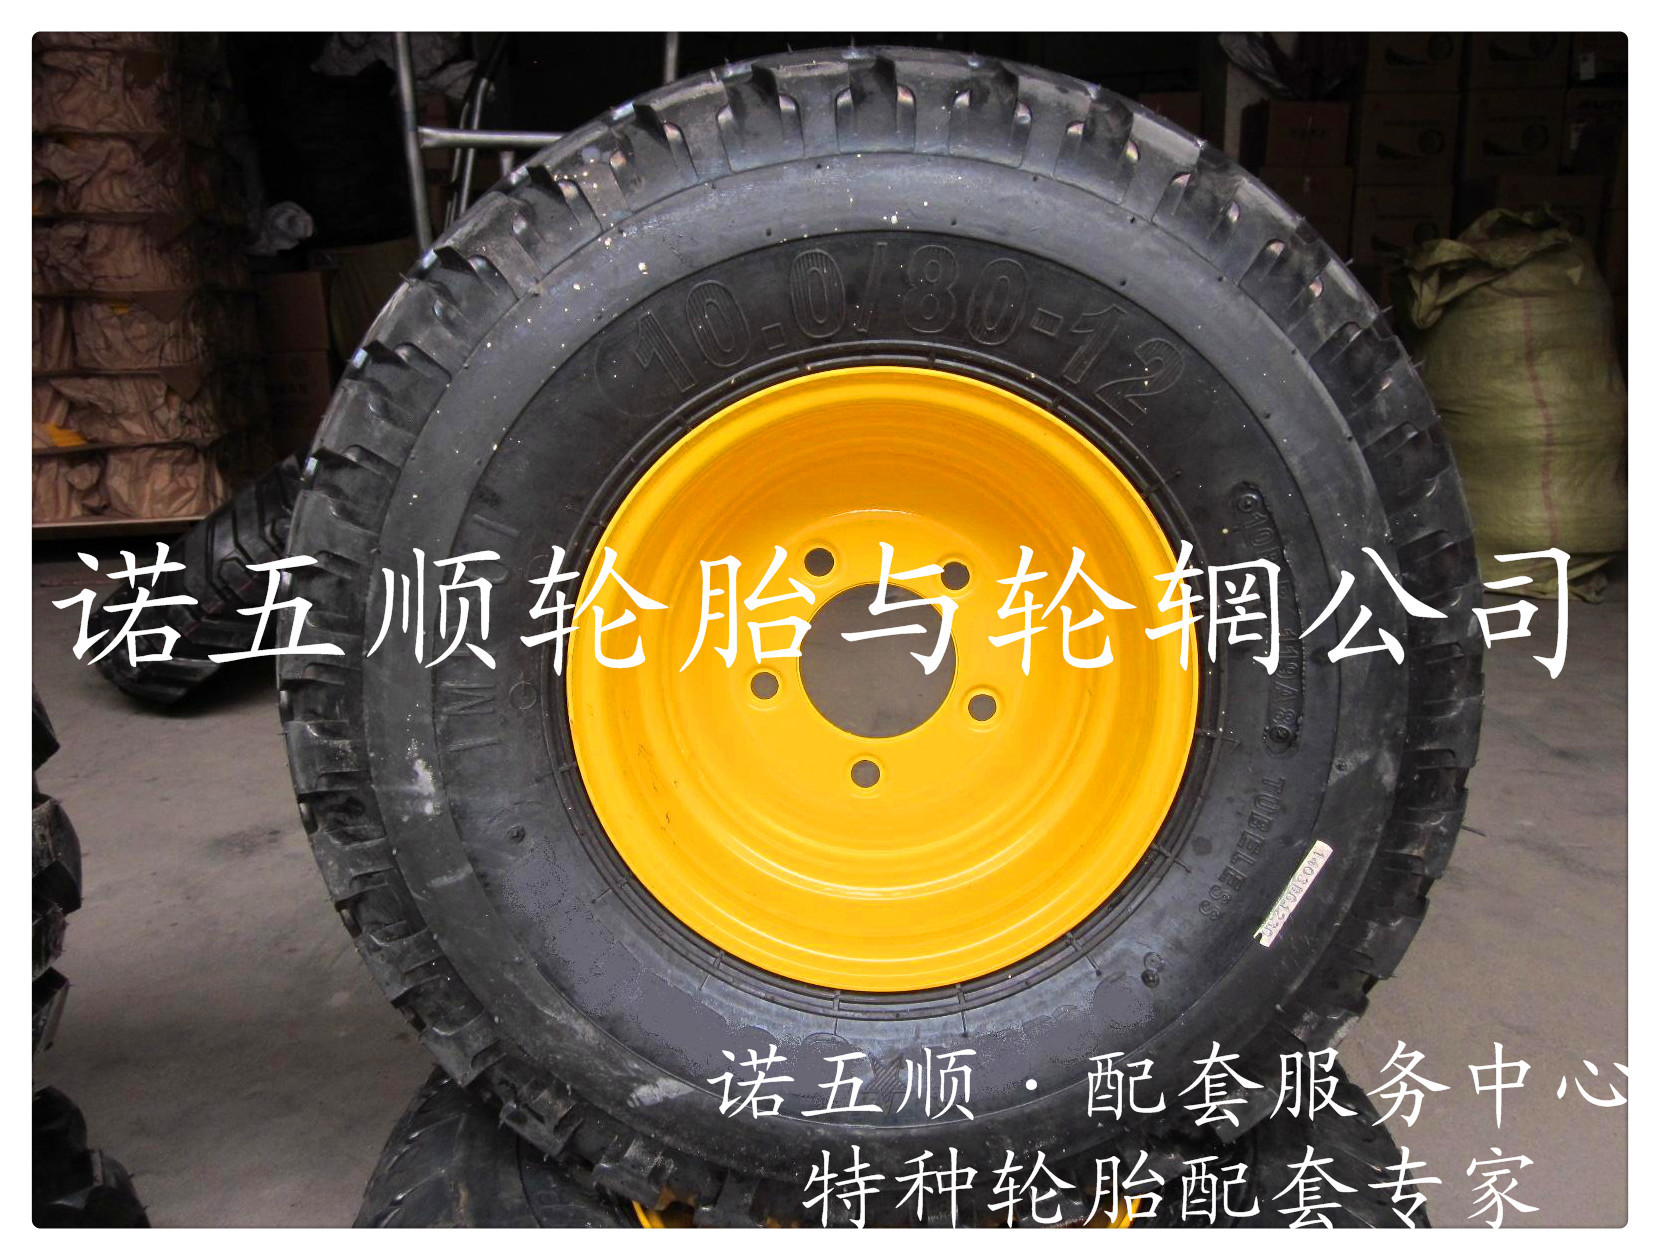 供應  10.0/80-12   平紋拖拉機輪胎 平紋工程輪胎及鋼圈配套